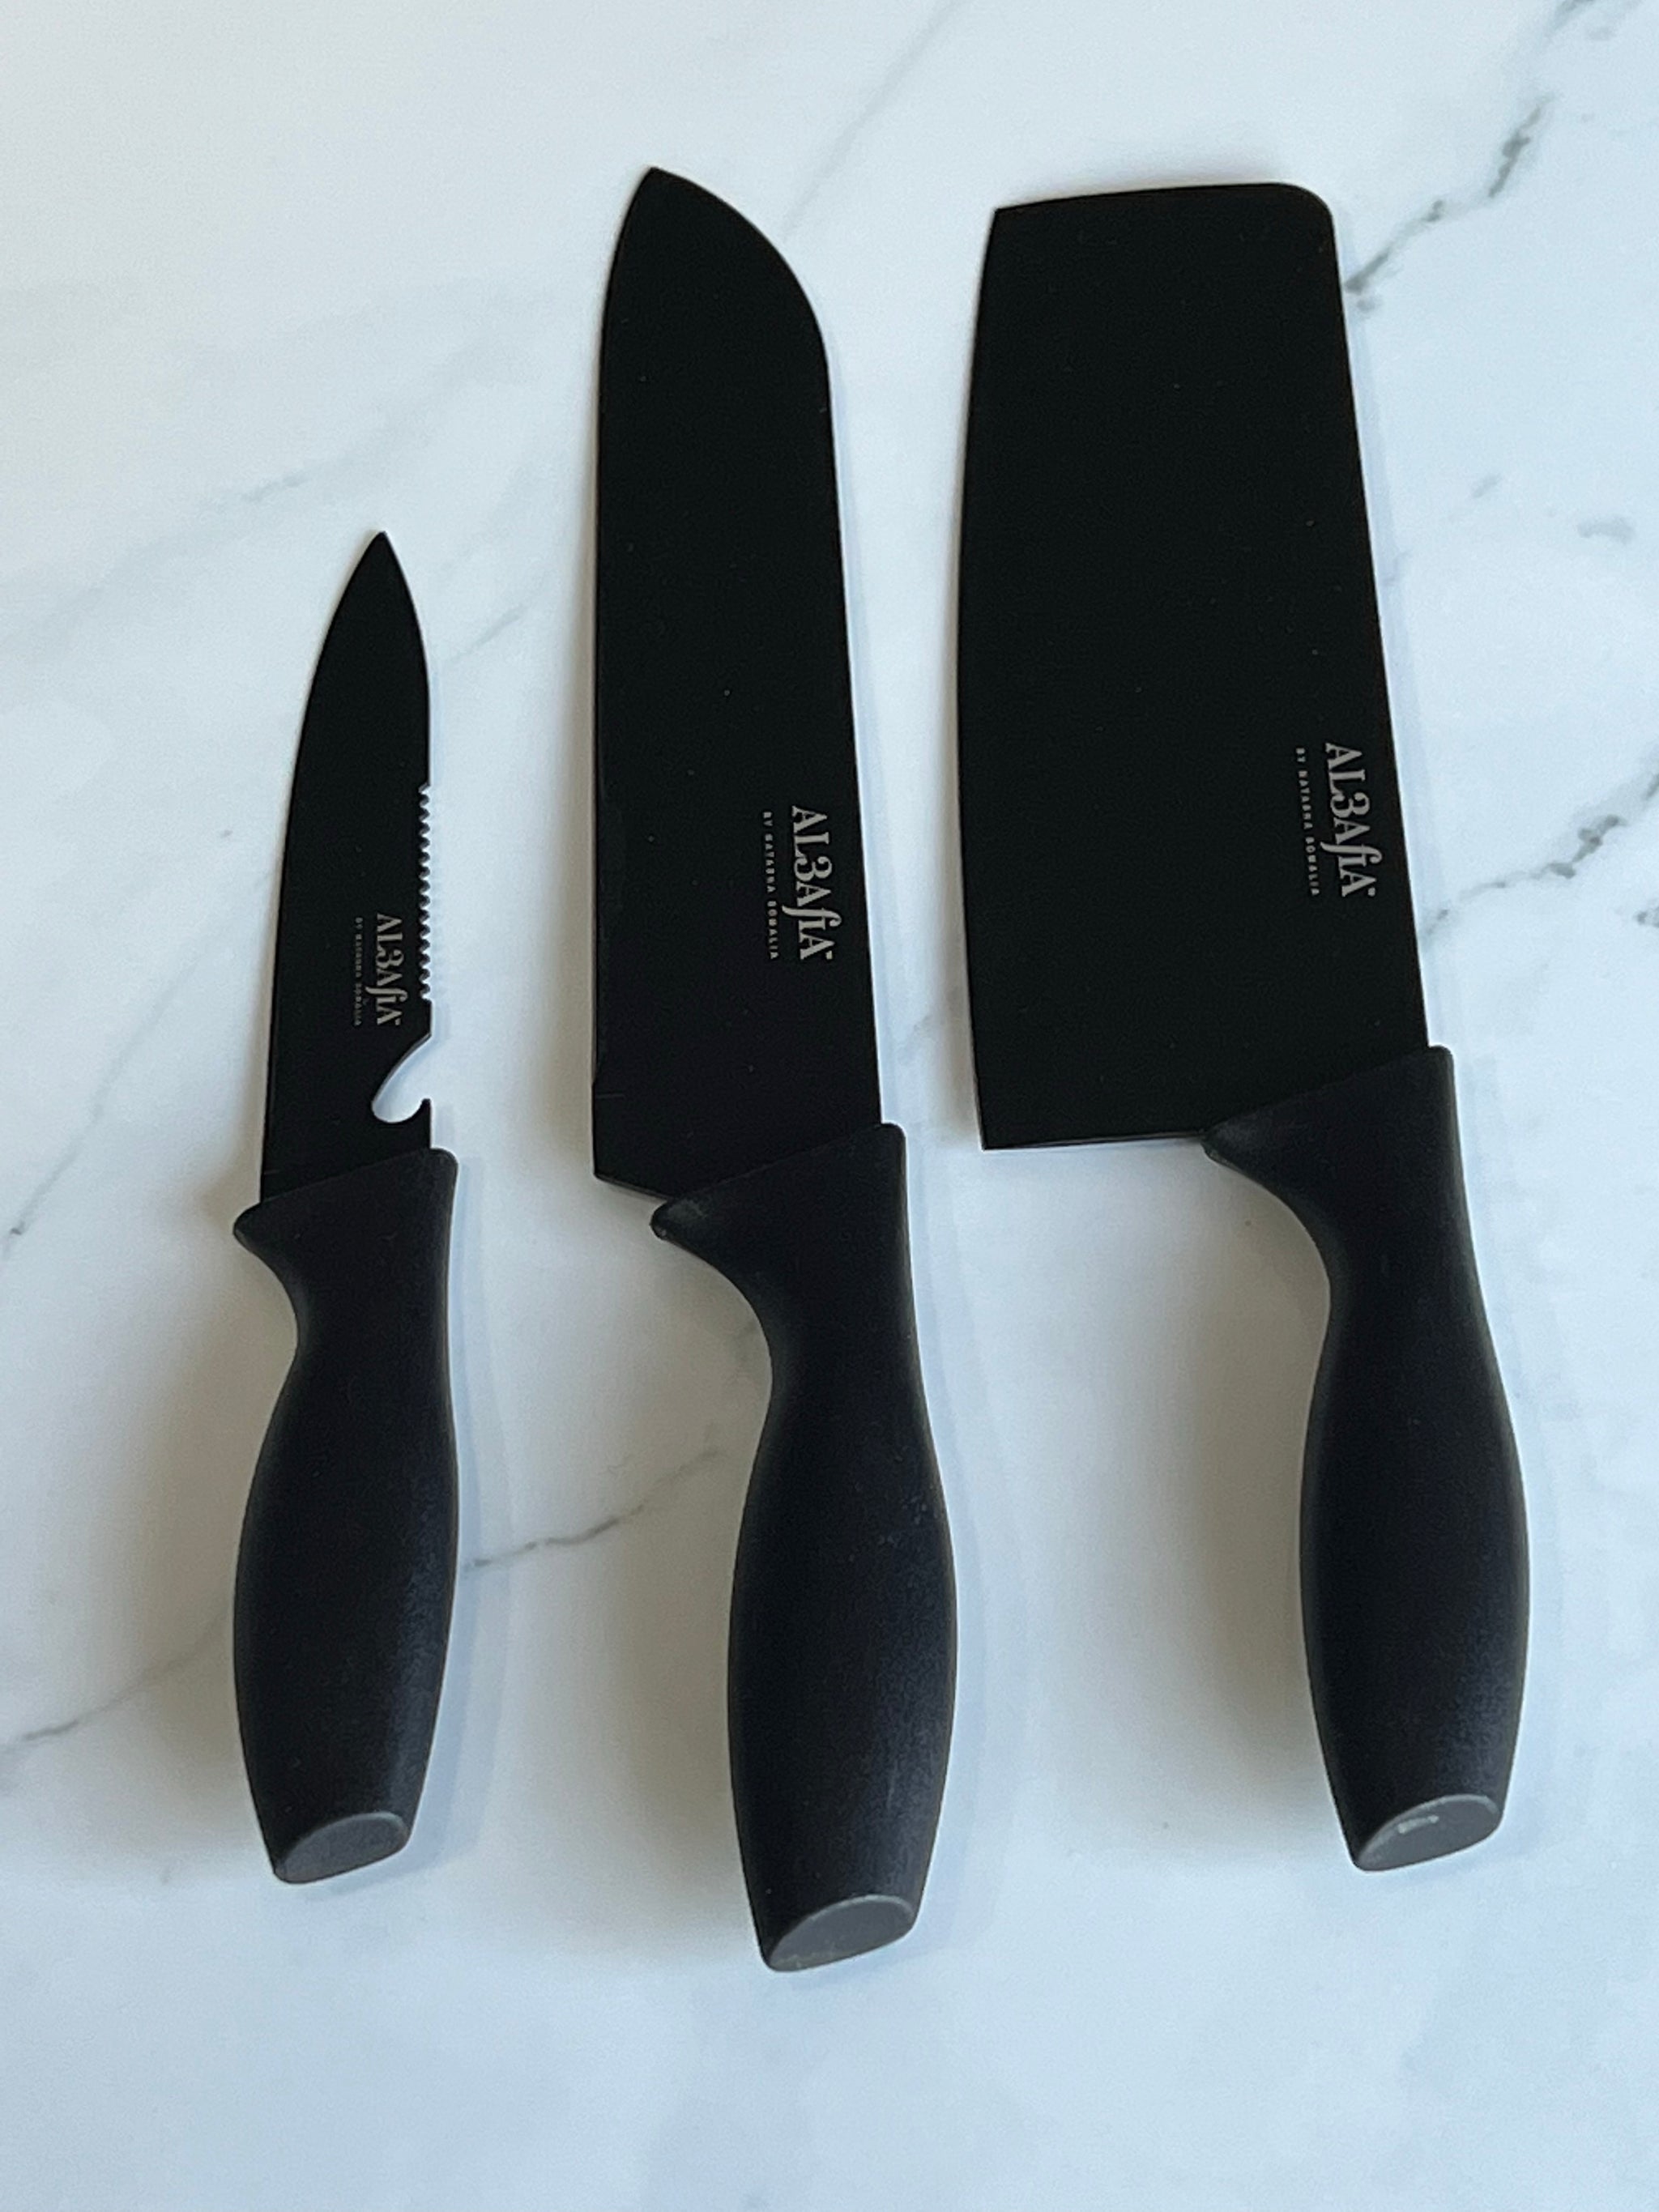 Al3afia Essential Fruit & Vegetable Knife Set of 3 Matte Black - Natasha  Somalia